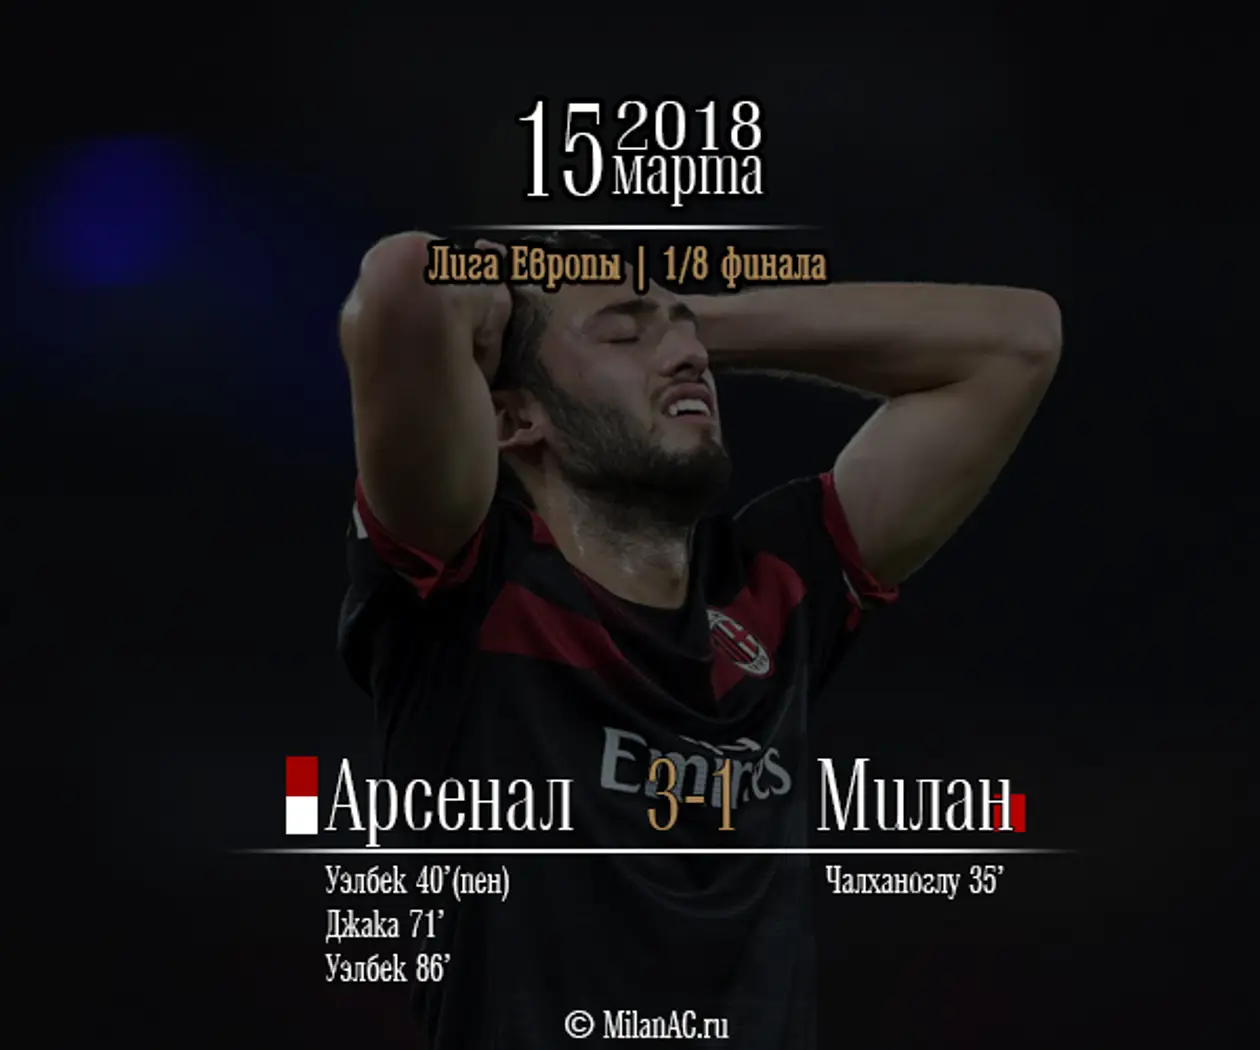 «Арсенал» — «Милан» 3-1 (1/8 финала Лиги Европы, ответный матч)